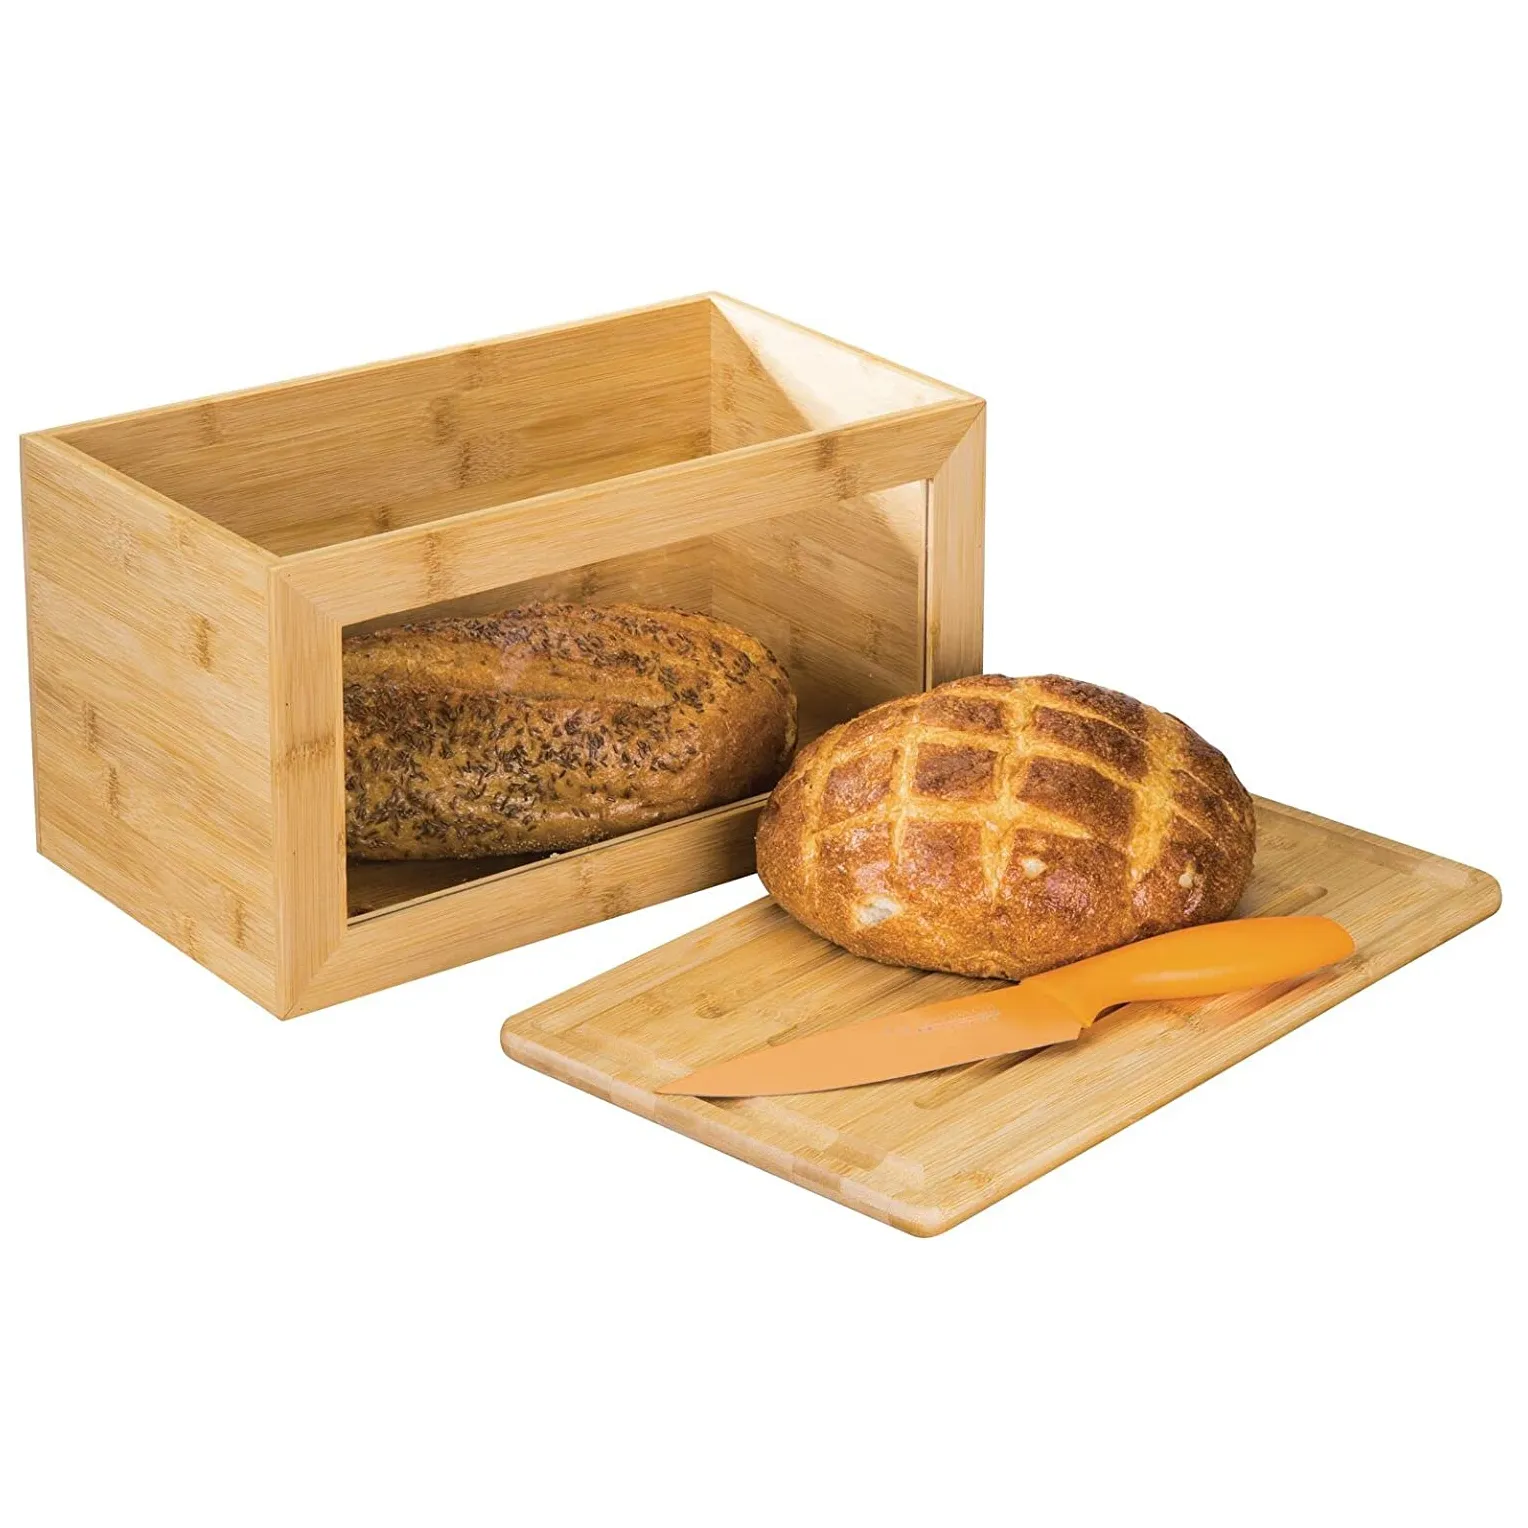 Single-Layer Natuurlijke Amboo Hout Brood Box Bin Met Board Deksel Cover Clear Venster Voor Bakken Keuken Thuis